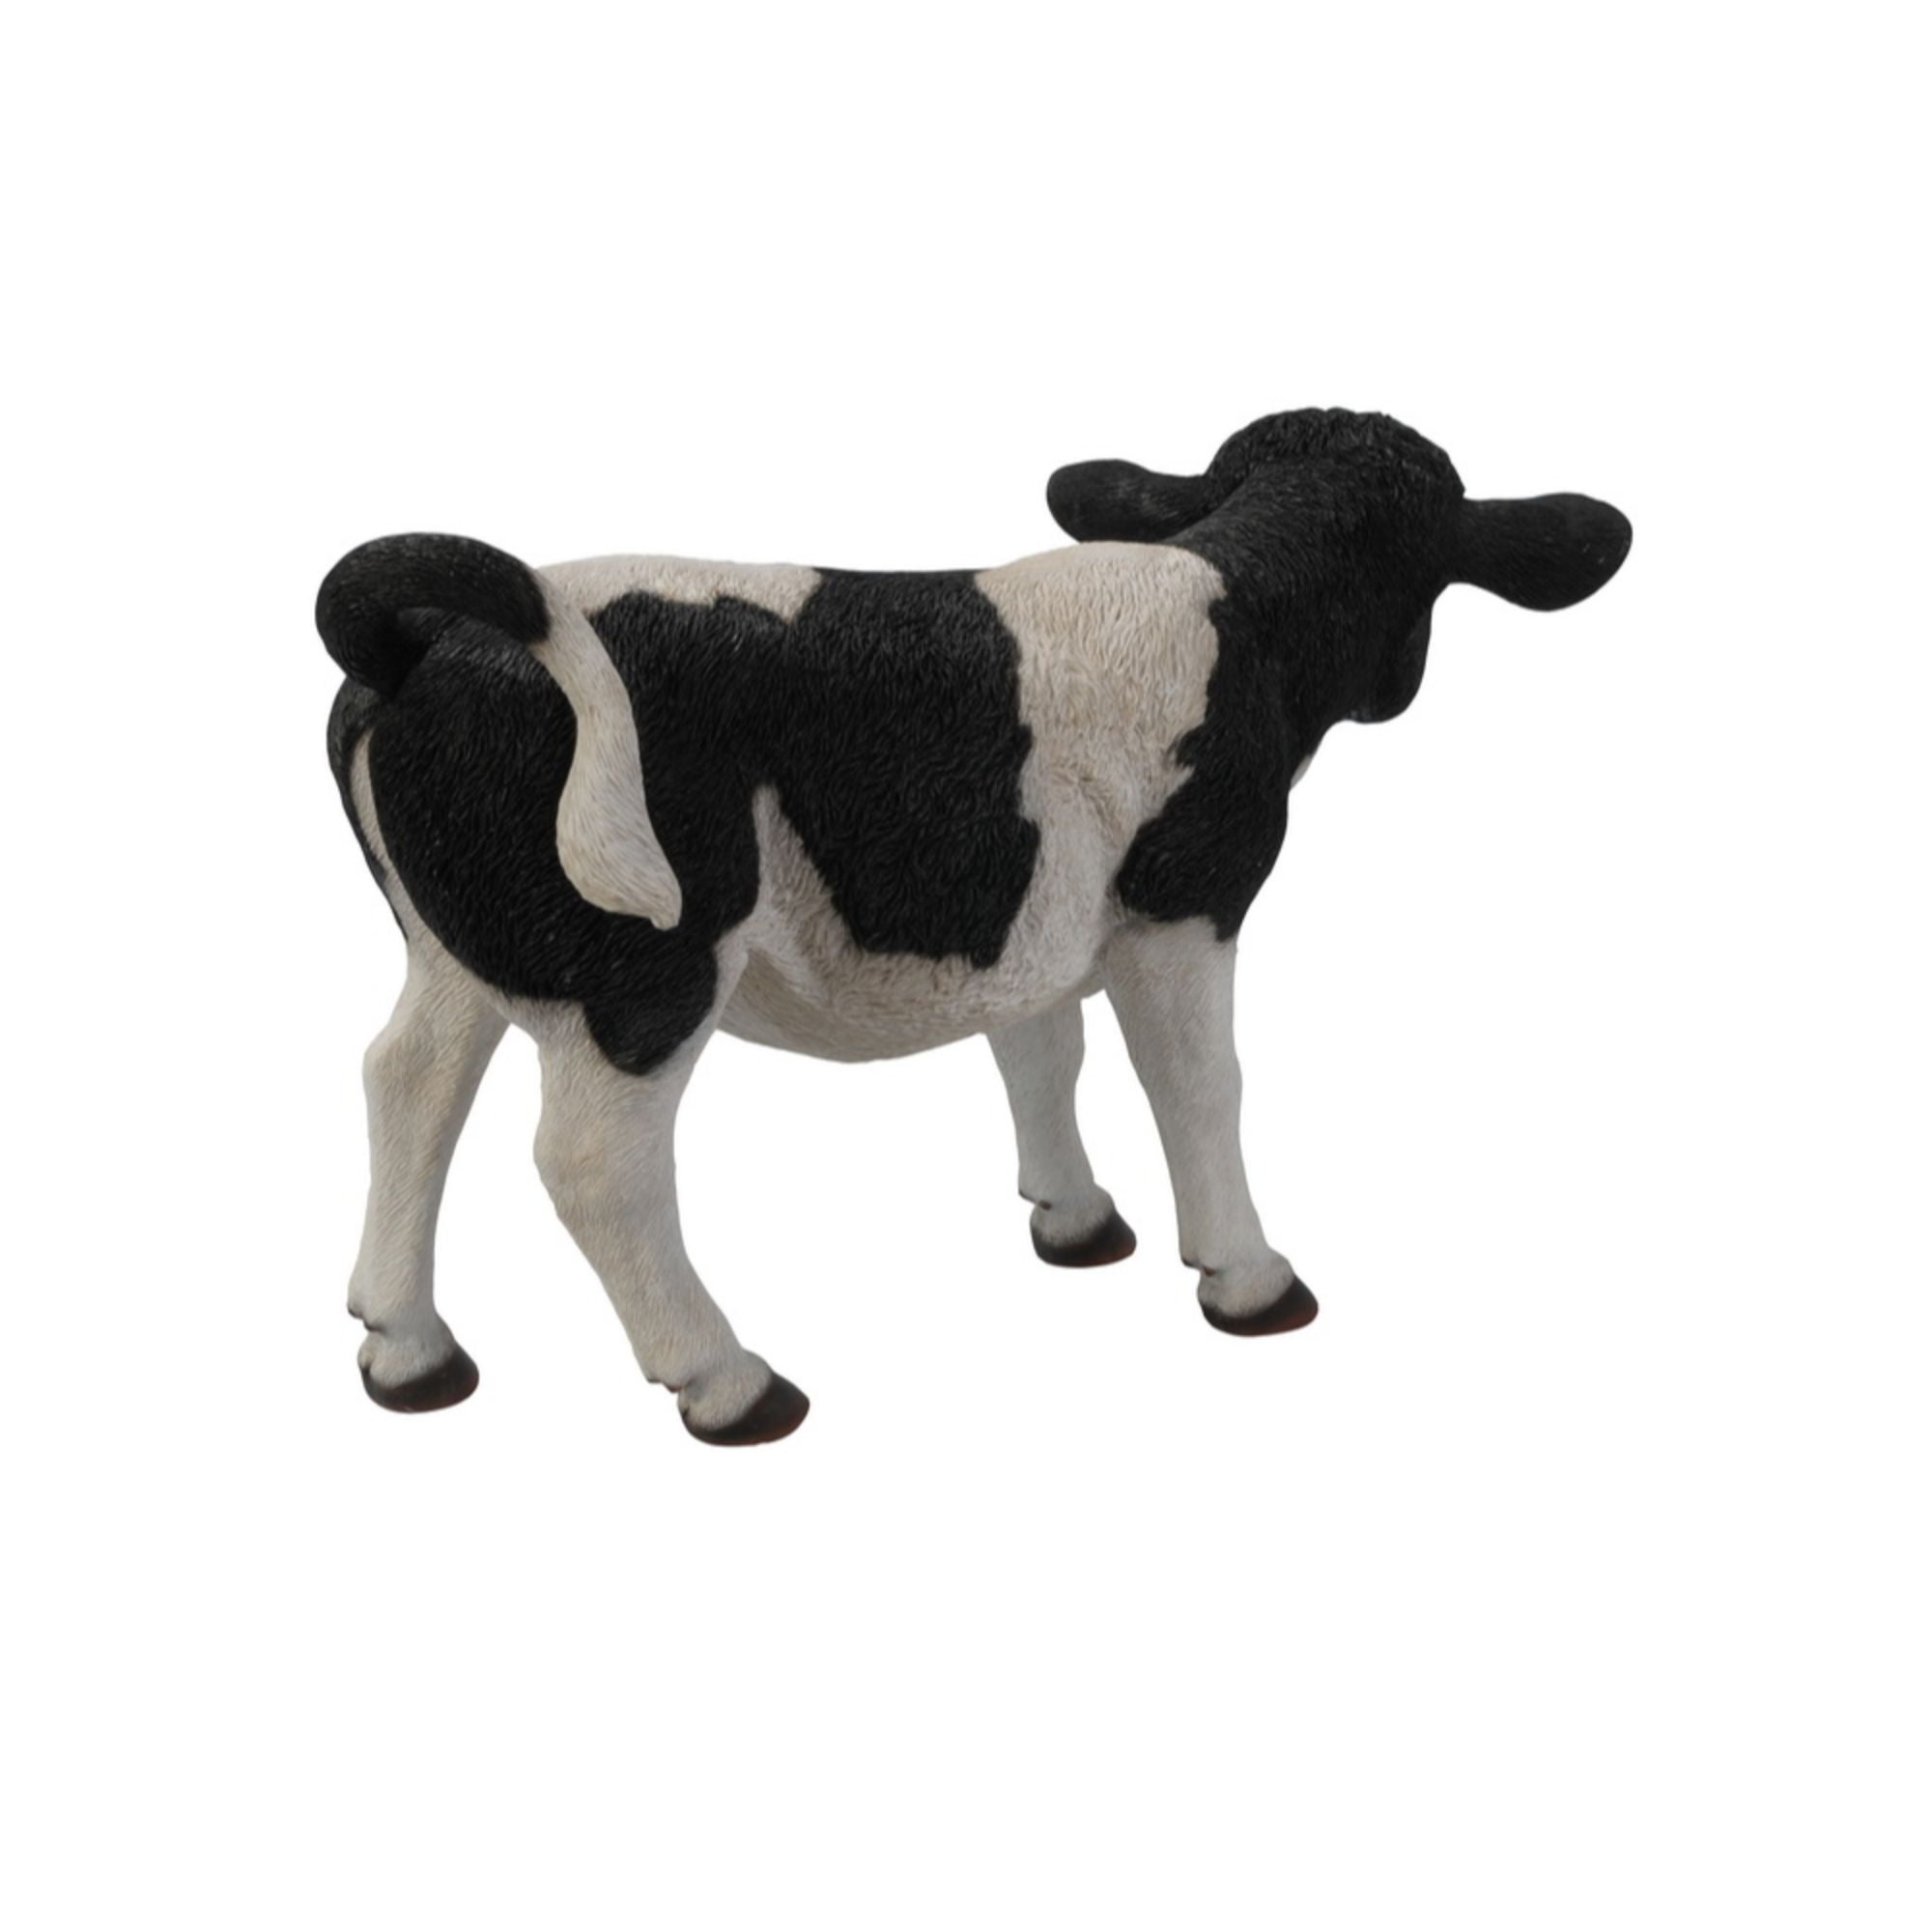 Black & White Baby Cow Calf Farm Animal Ornament Figurine Statue 